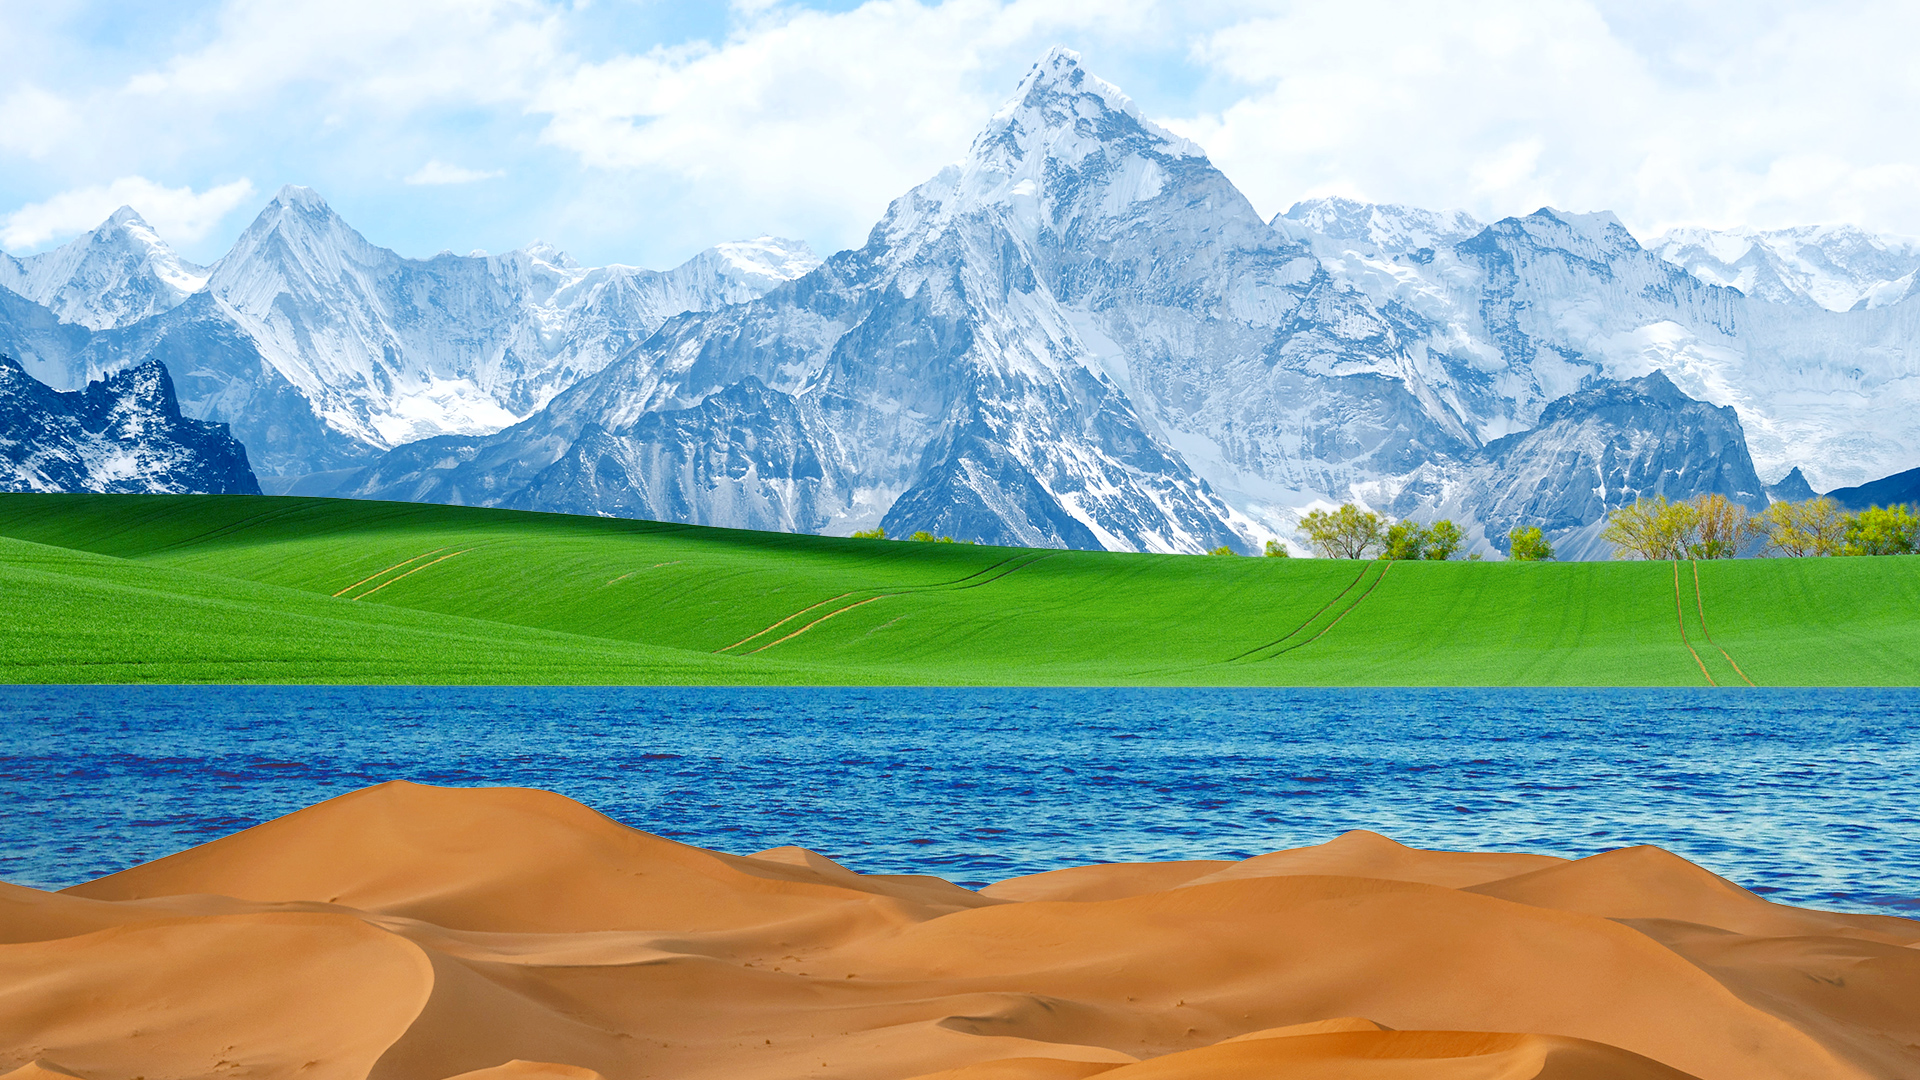 山、草原、水、砂漠のコラージュcomposite of mountains, grass, water, desert